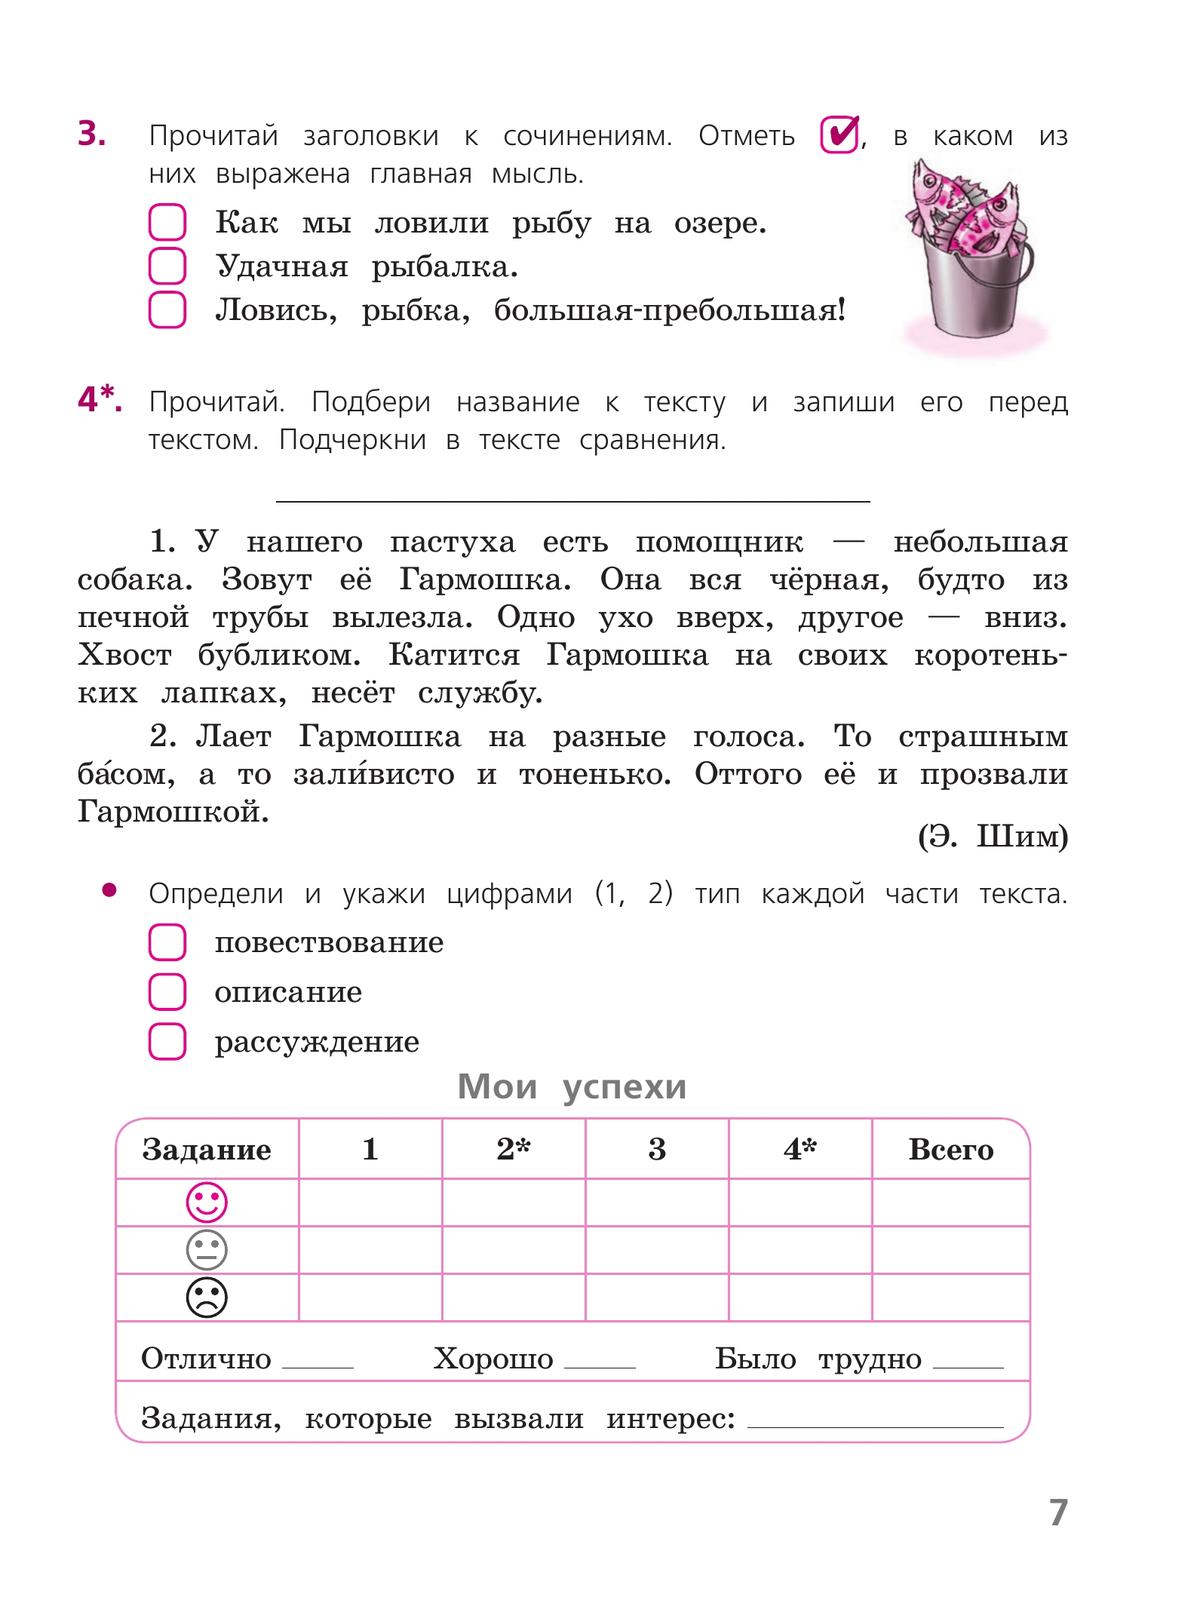 Русский язык. Тетрадь учебных достижений. 4 класс 8